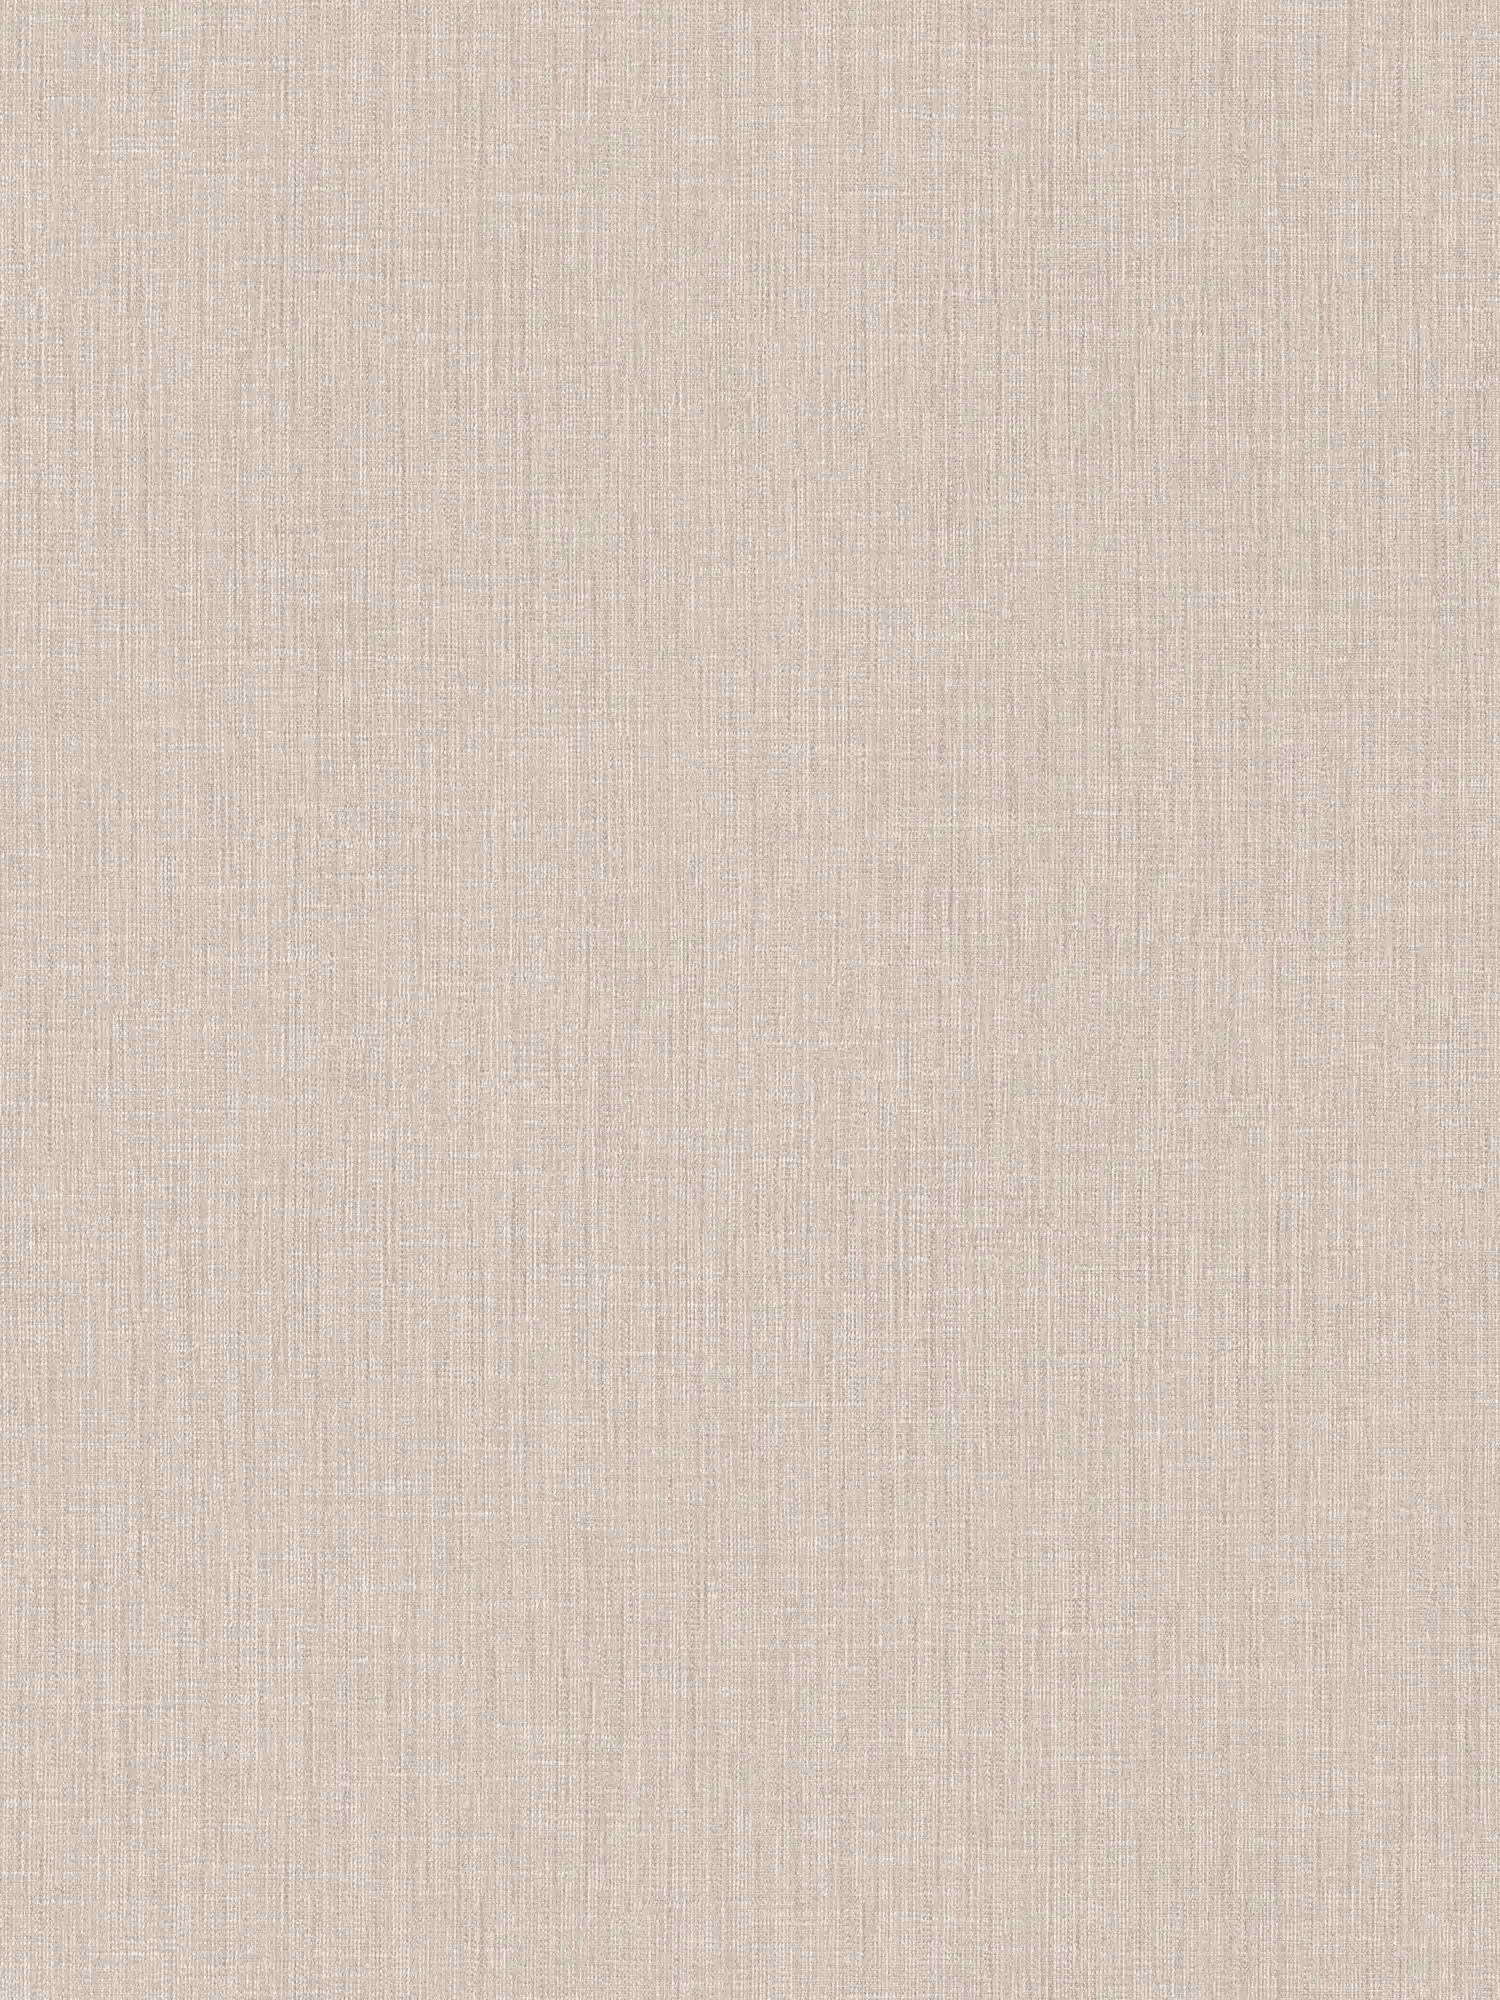 Papier peint intissé aspect tissé, chiné - beige, crème, blanc
